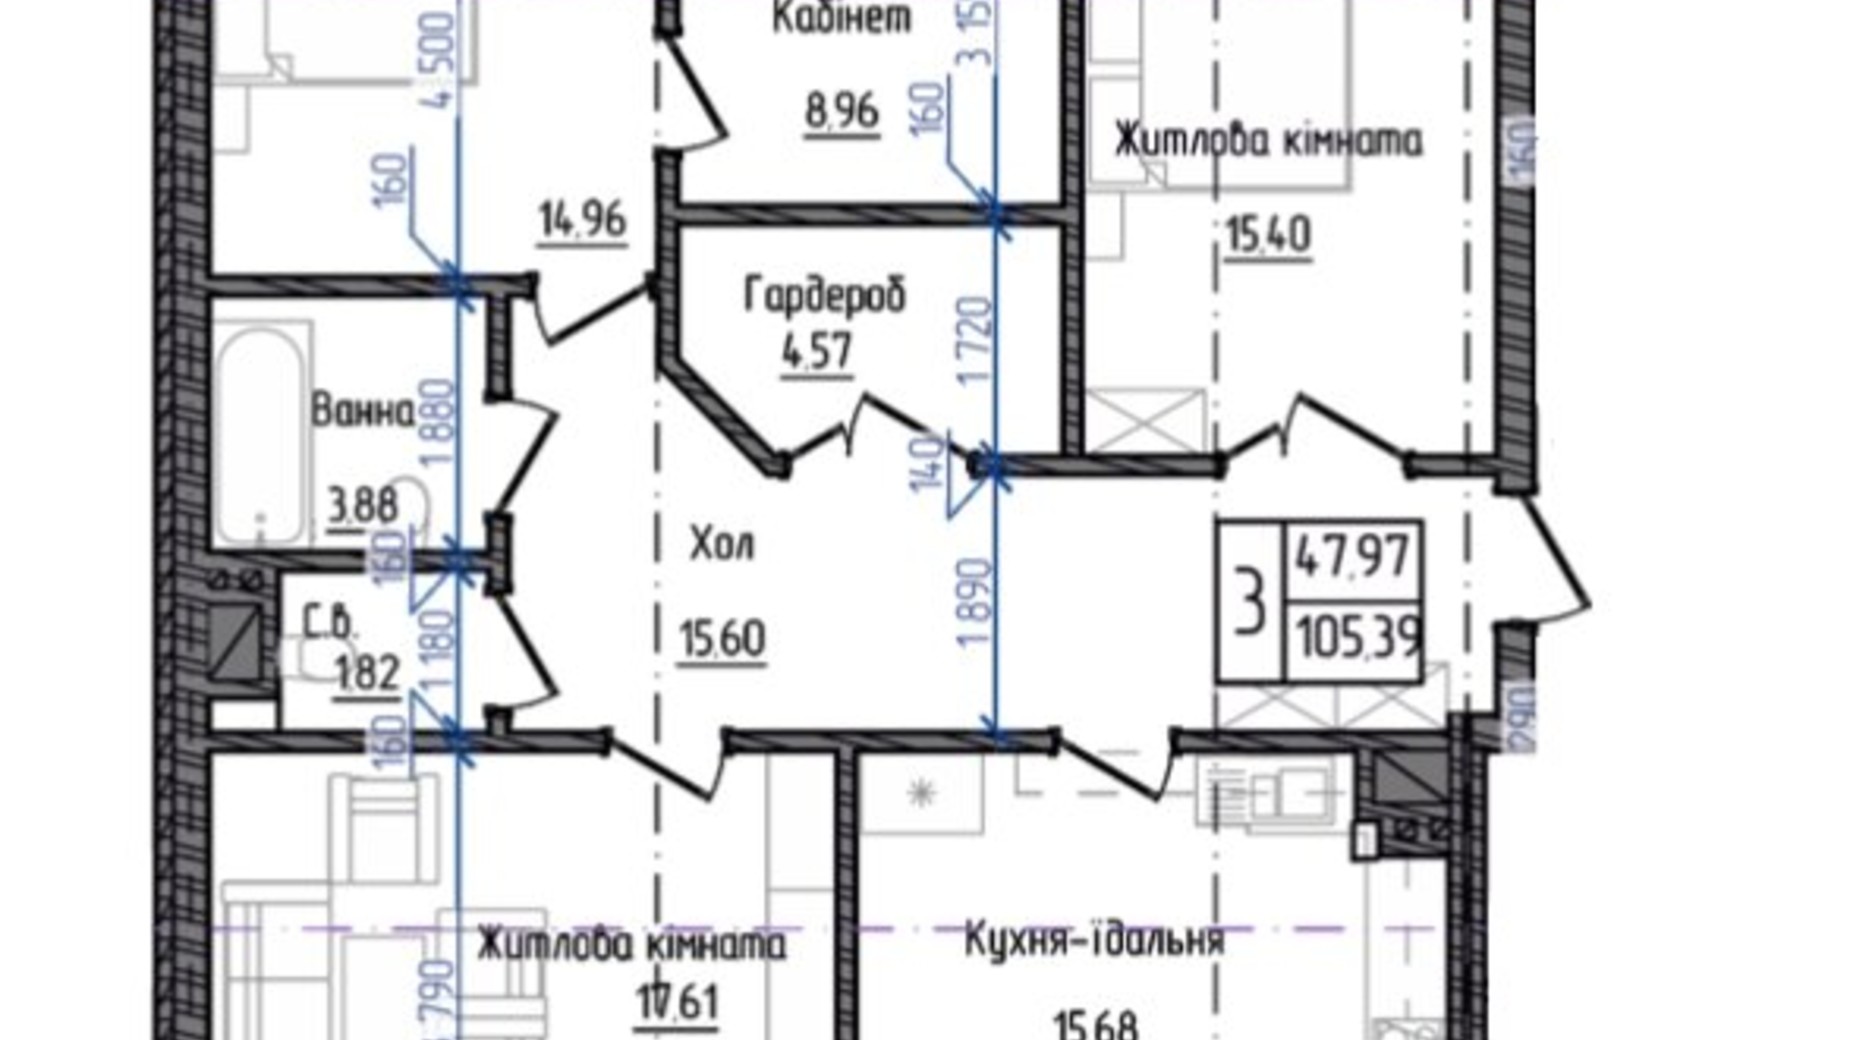 Планировка 3-комнатной квартиры в ЖК Престижный 2 105.39 м², фото 268960